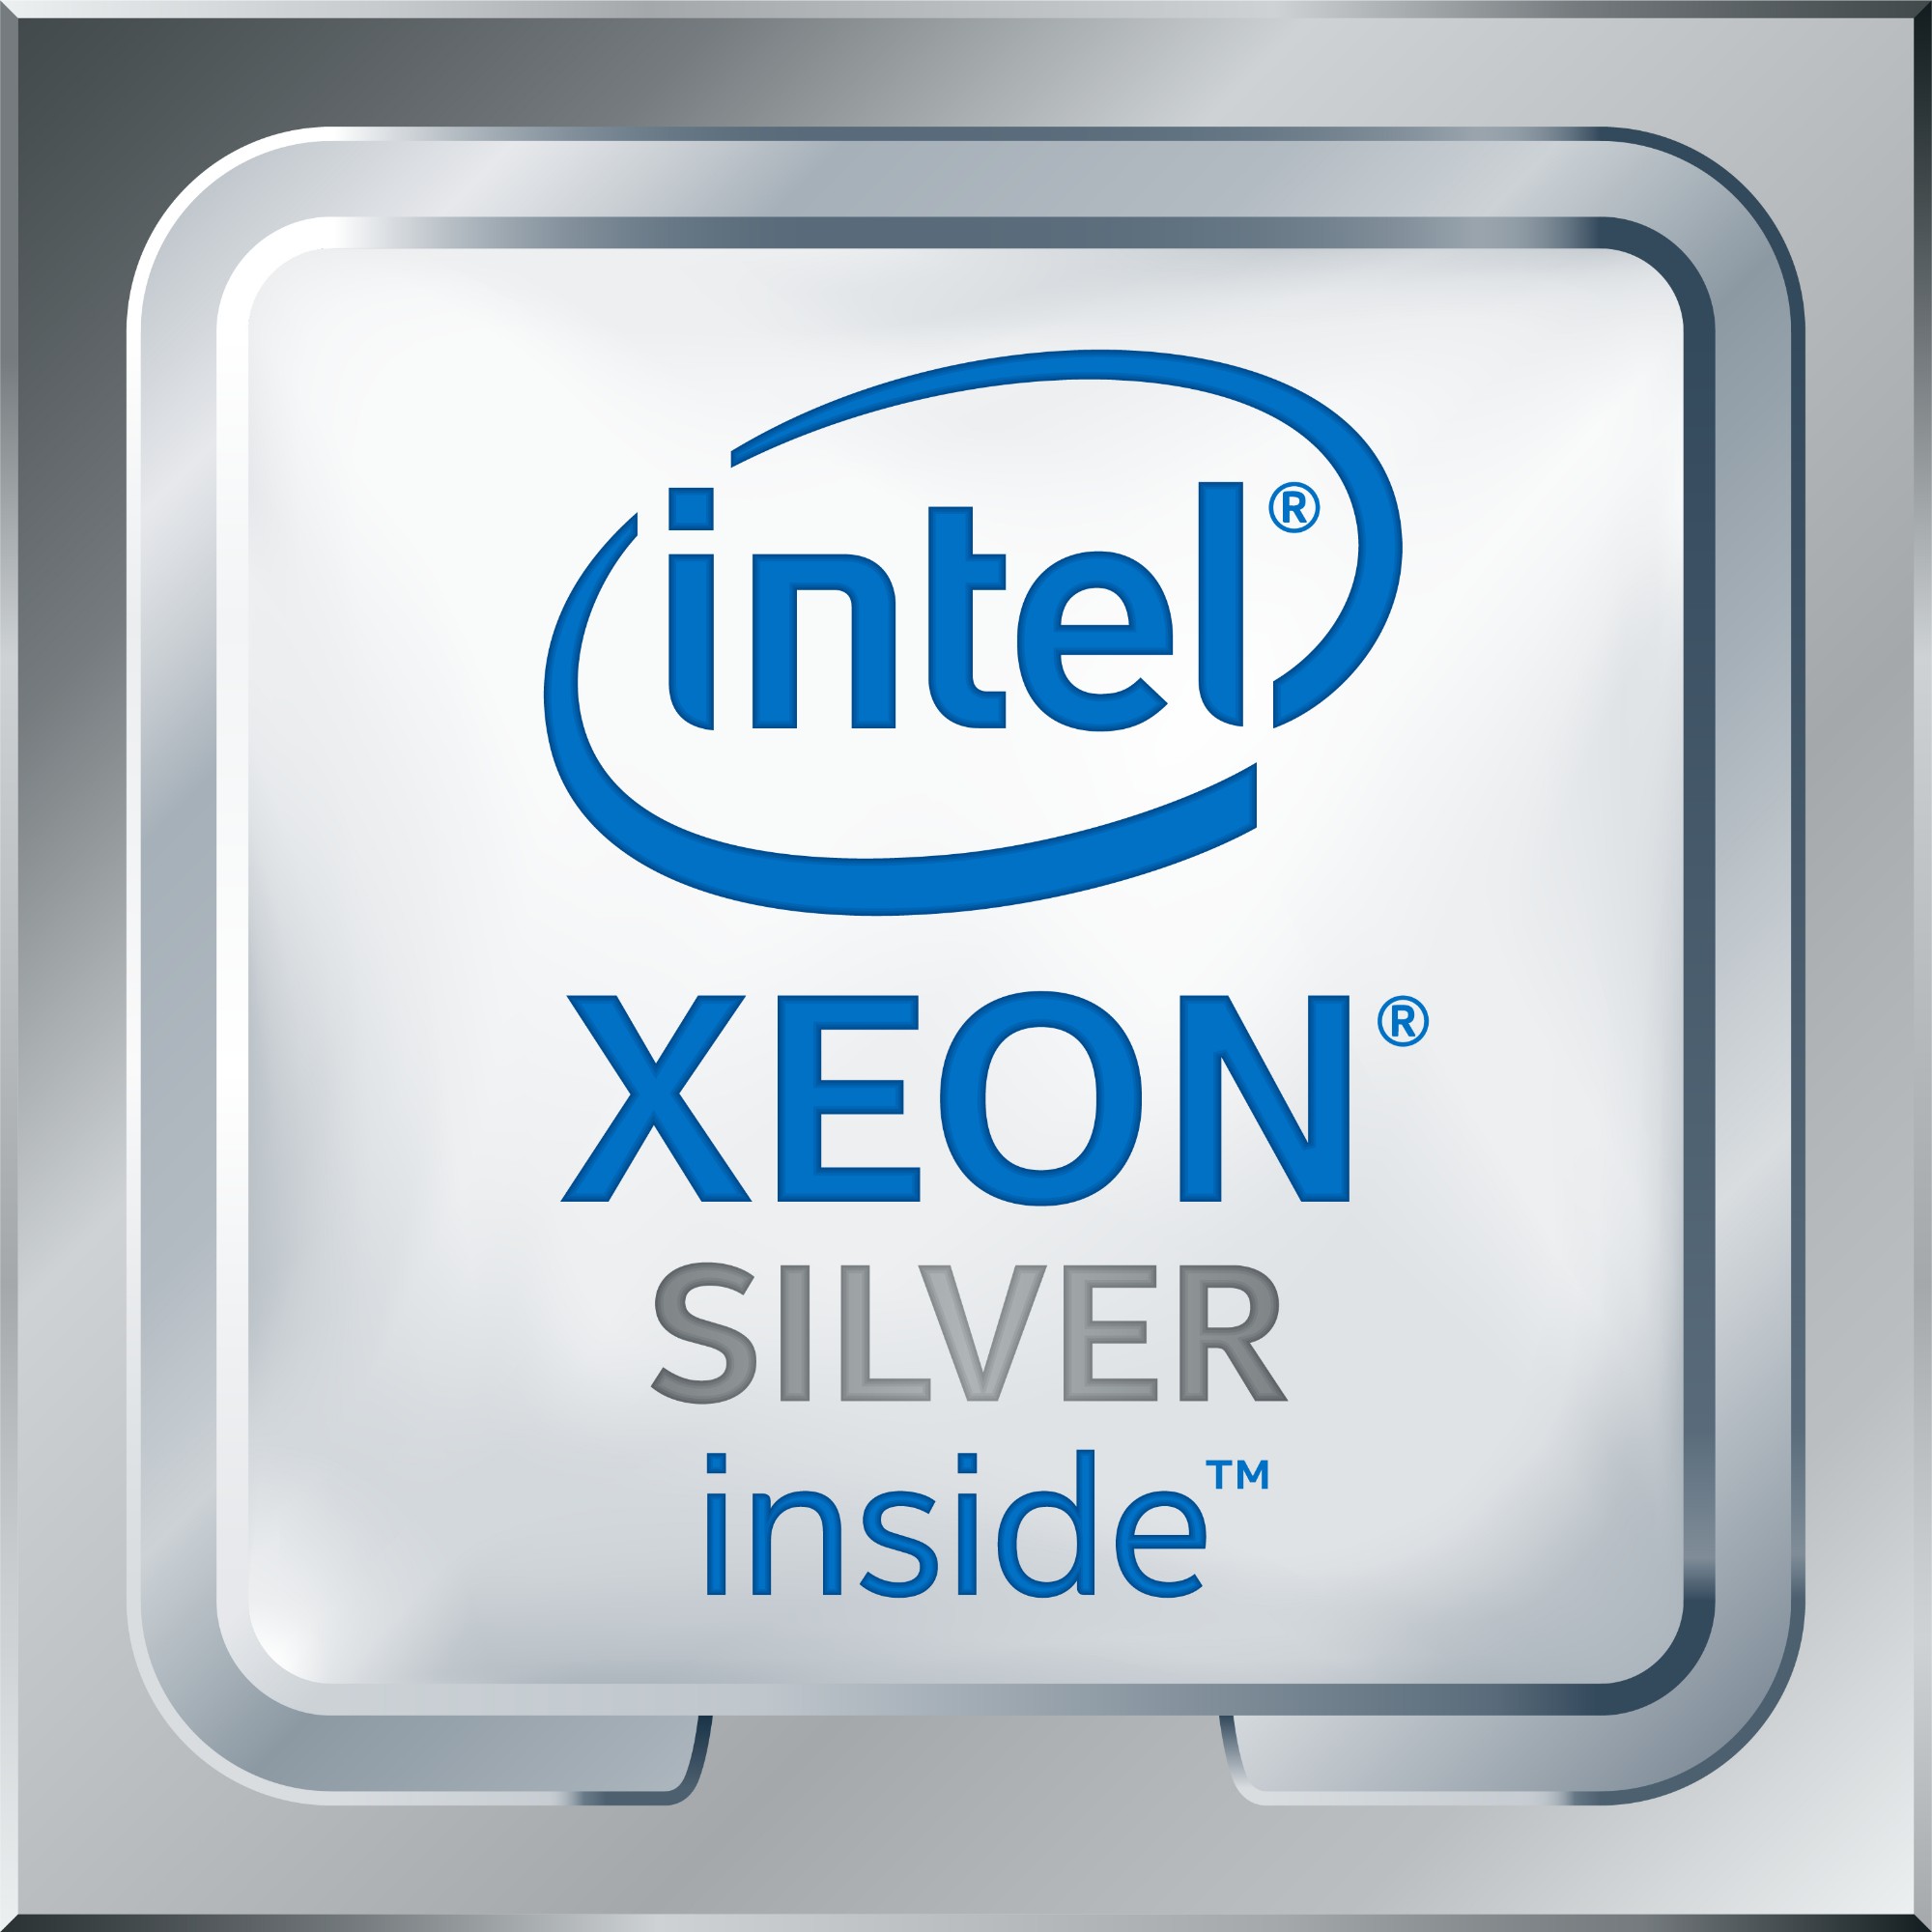 Cisco Xeon Silver 4112 (8.25M Cache, 2.60 GHz) processor 8.3 MB L3